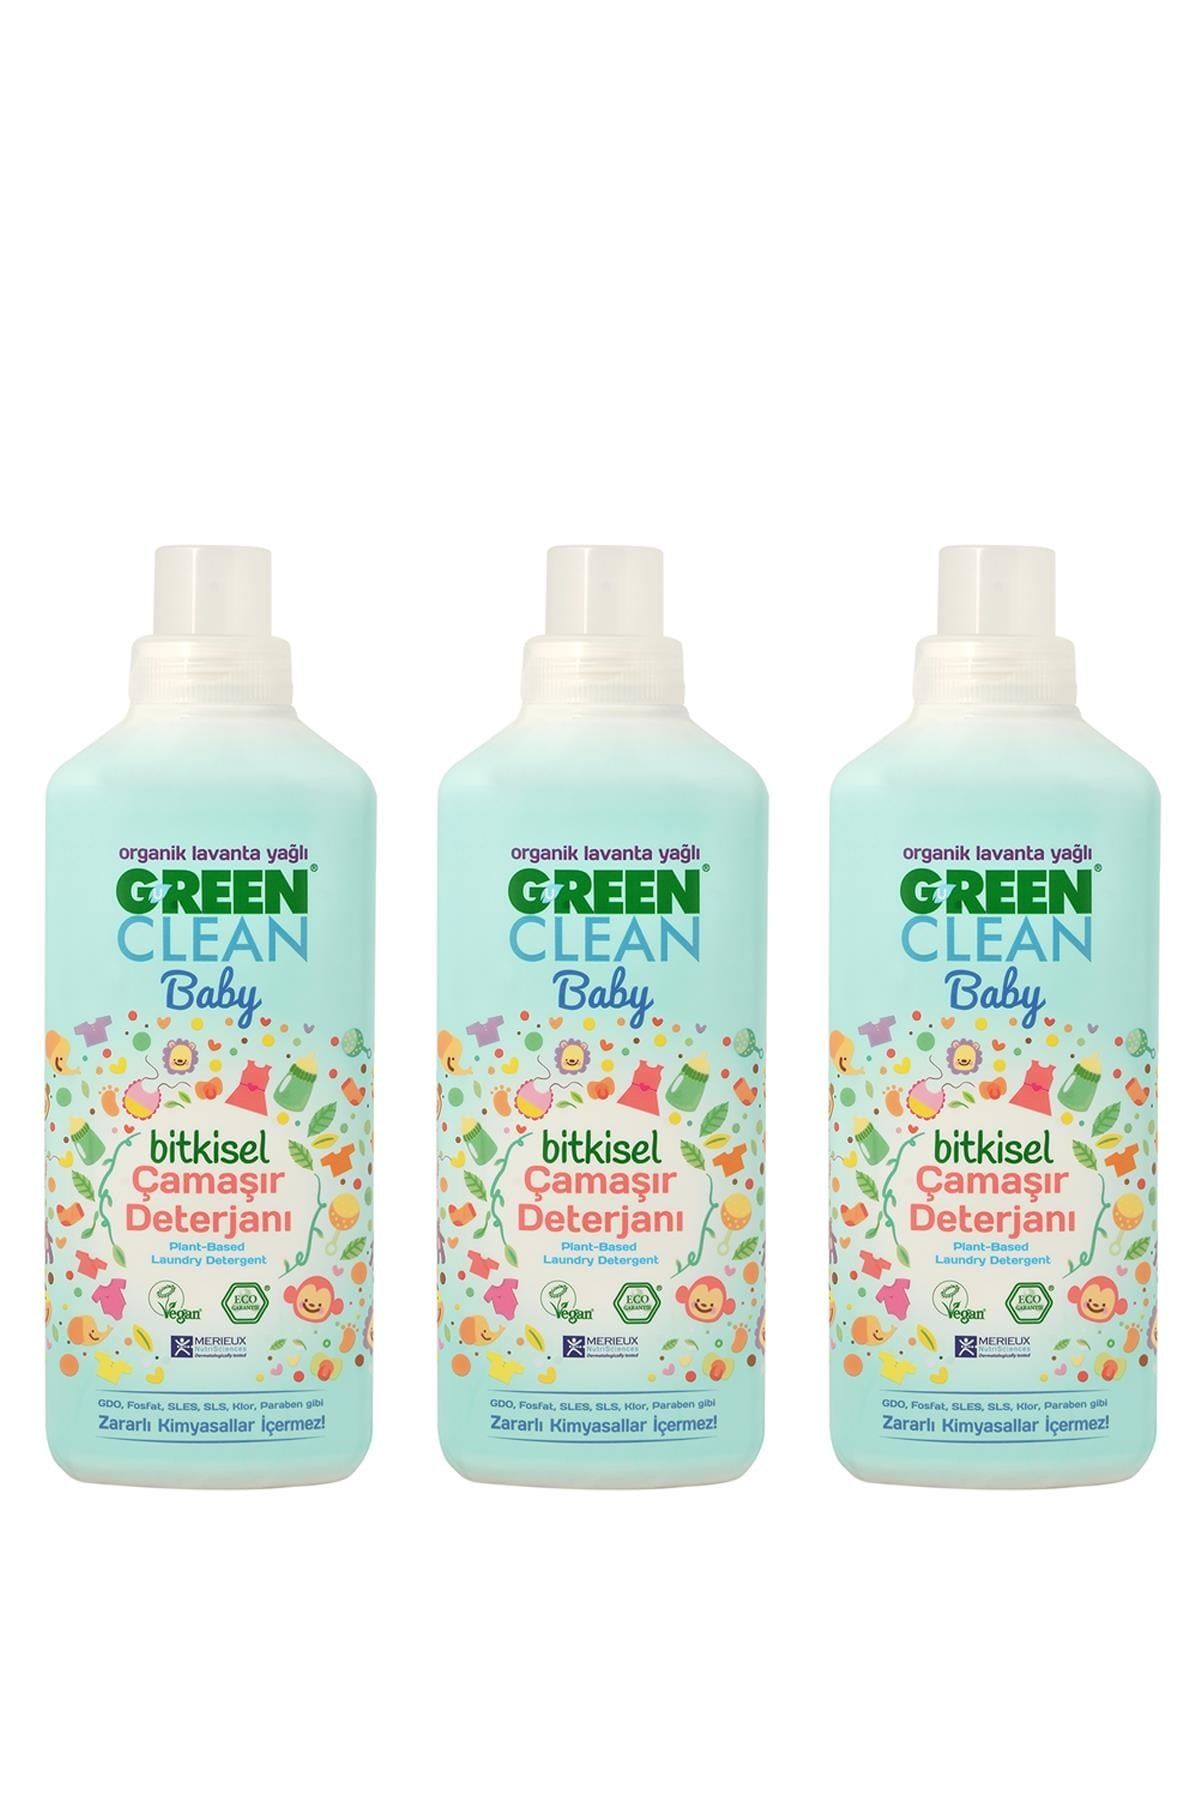 Green Clean Organik Lavanta Yağlı Baby Bitkisel Çamaşır Deterjanı 1000 ml - 3'lü